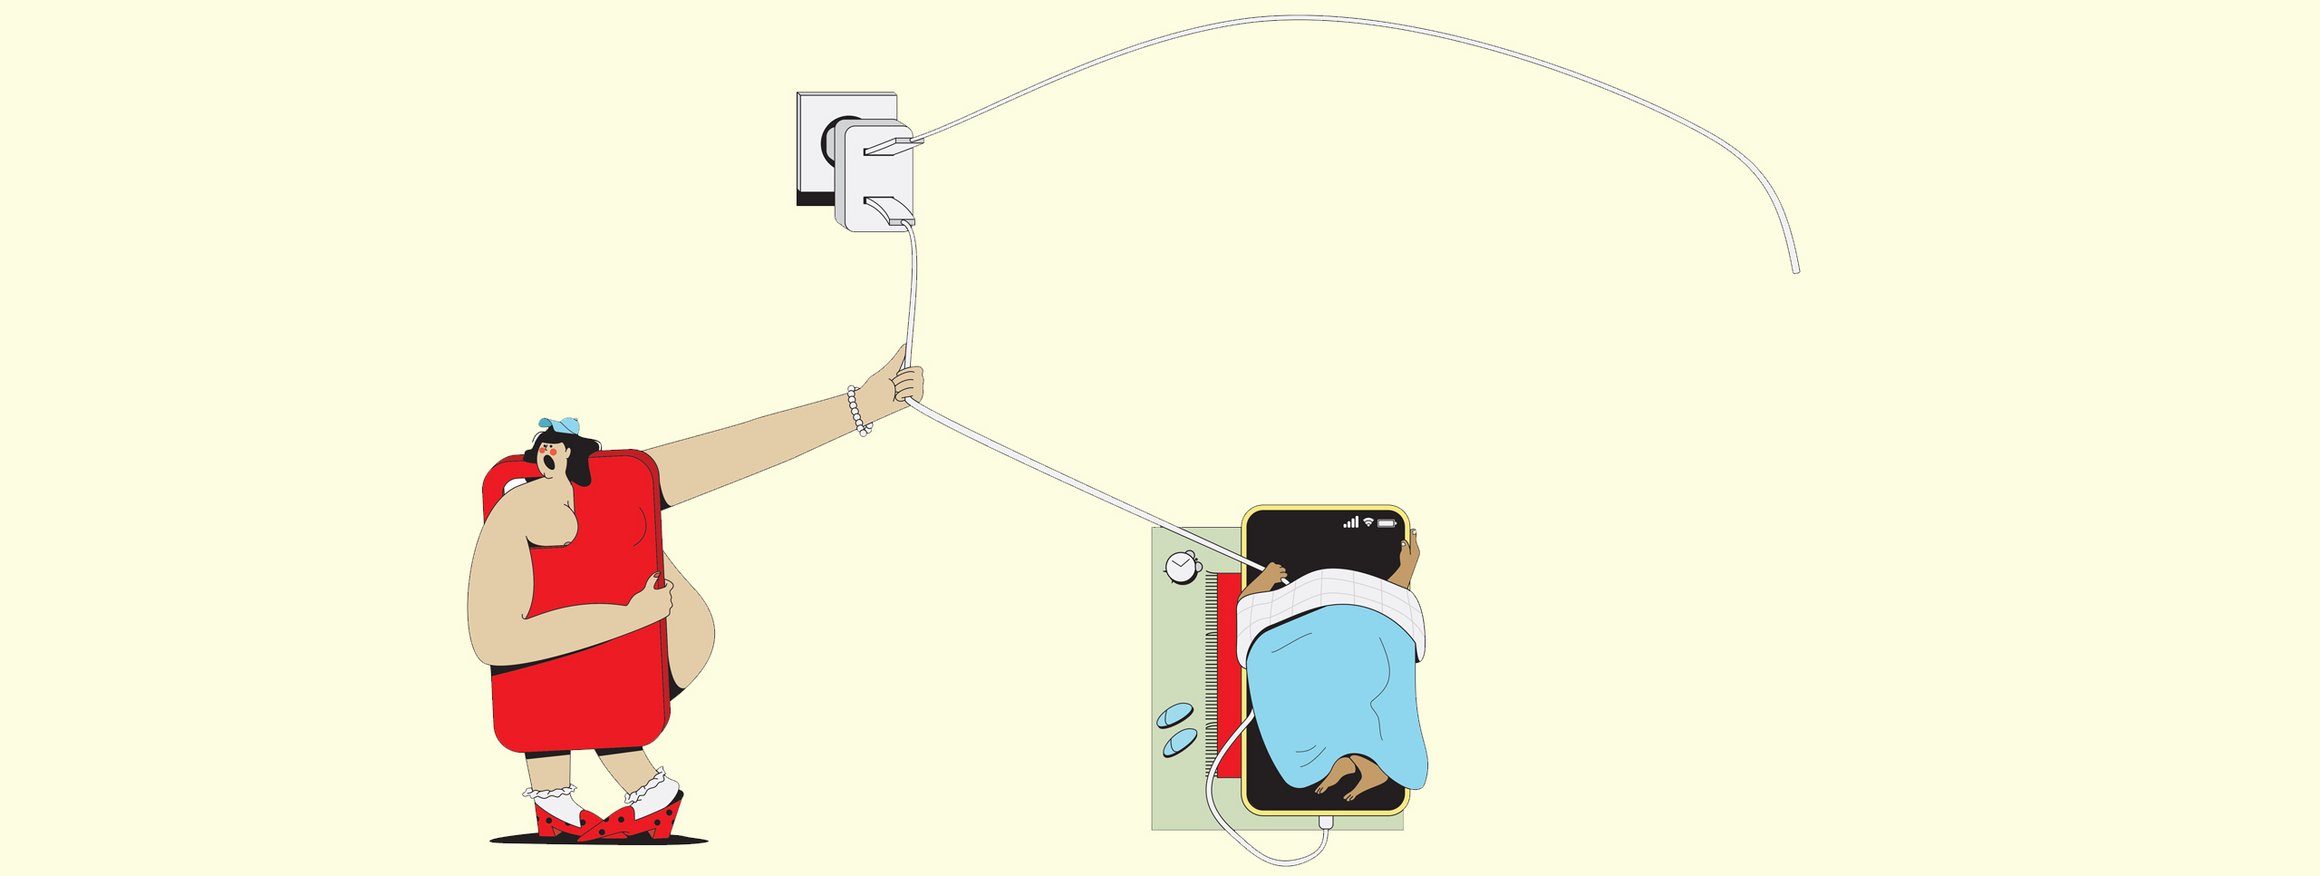 Die Illustration zeigt eine Mädchen, dass an einem Kabel zieht, das mit einem Smartphone verbunden ist